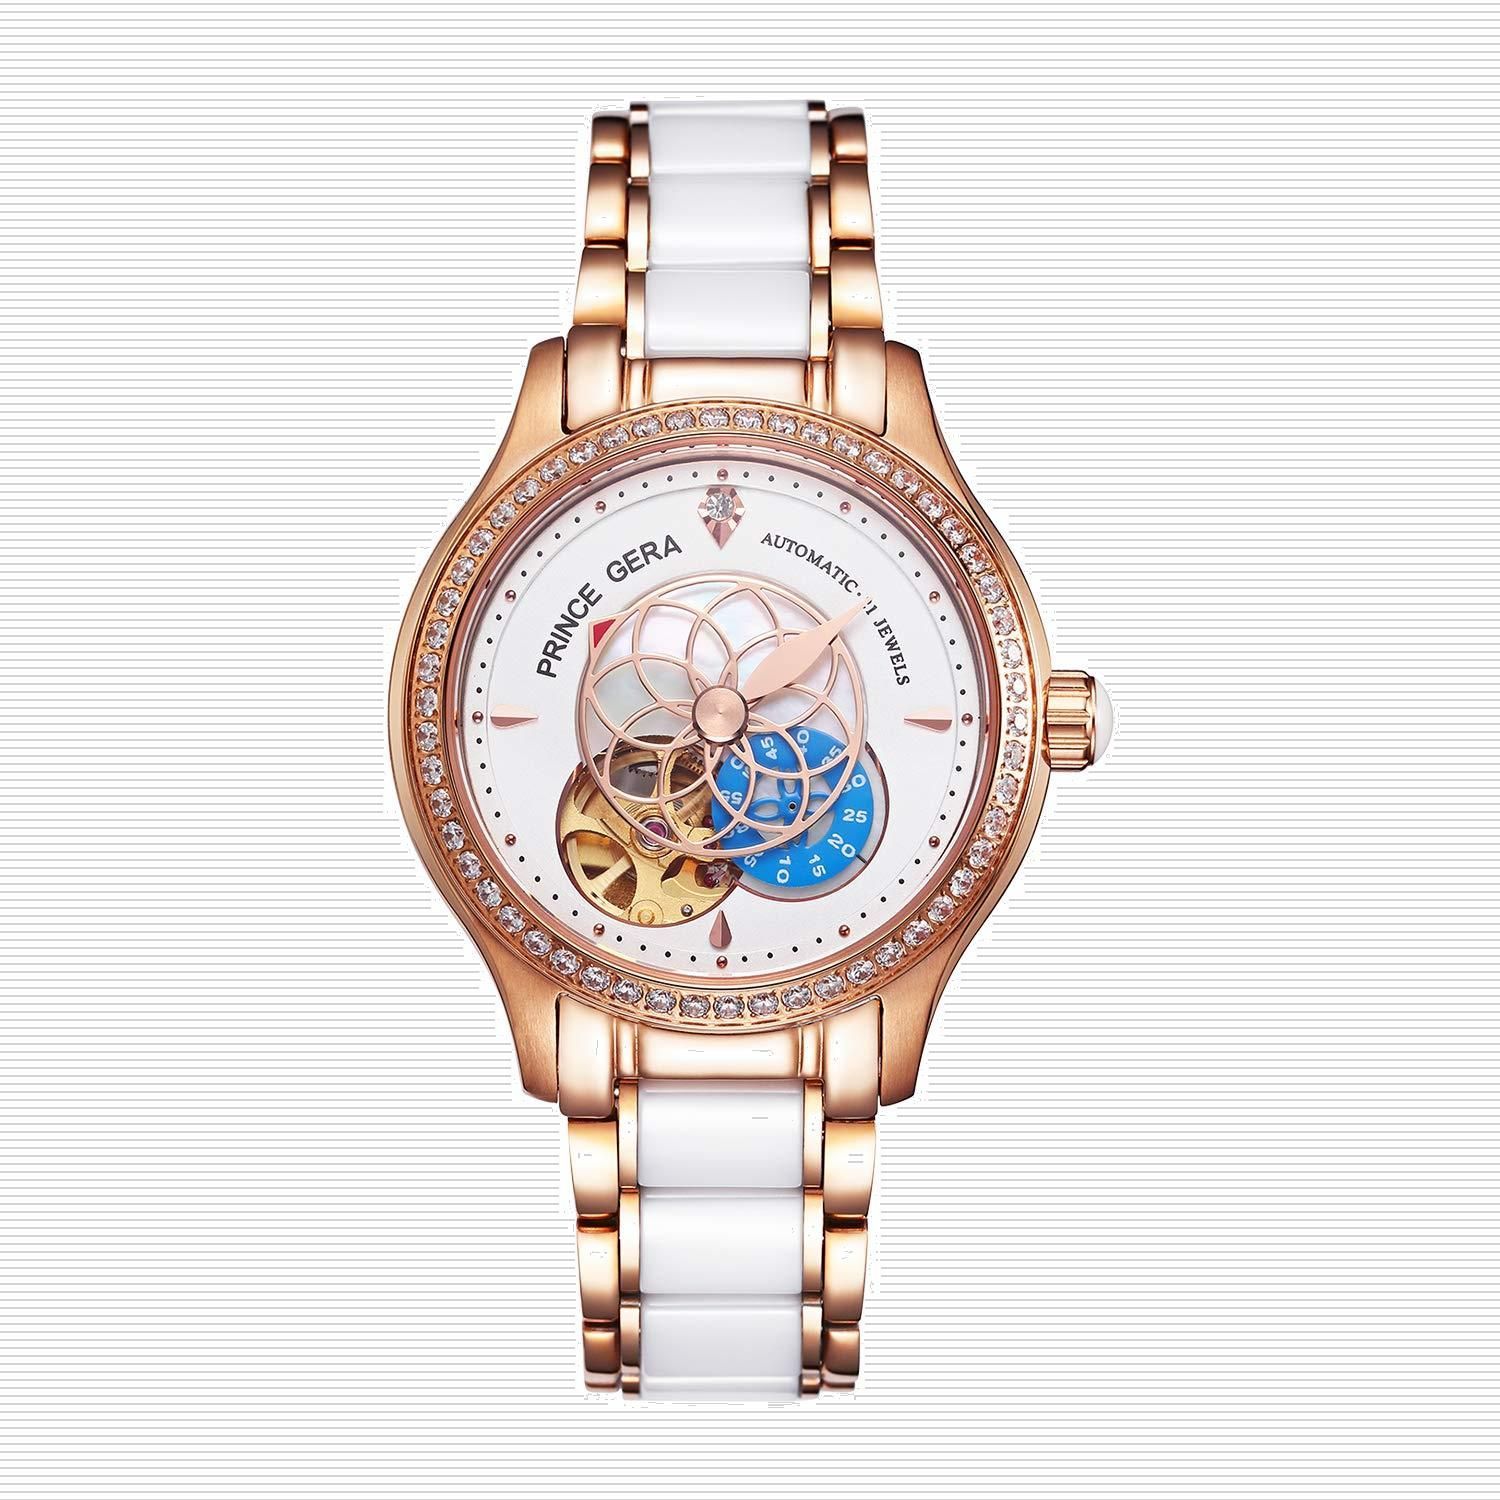 【在庫処分】ローズゴールド腕時計 防水 5ATM 高級 機械式 腕時計レデイース- レディース-自動巻き 腕時計 GERA PRINCE